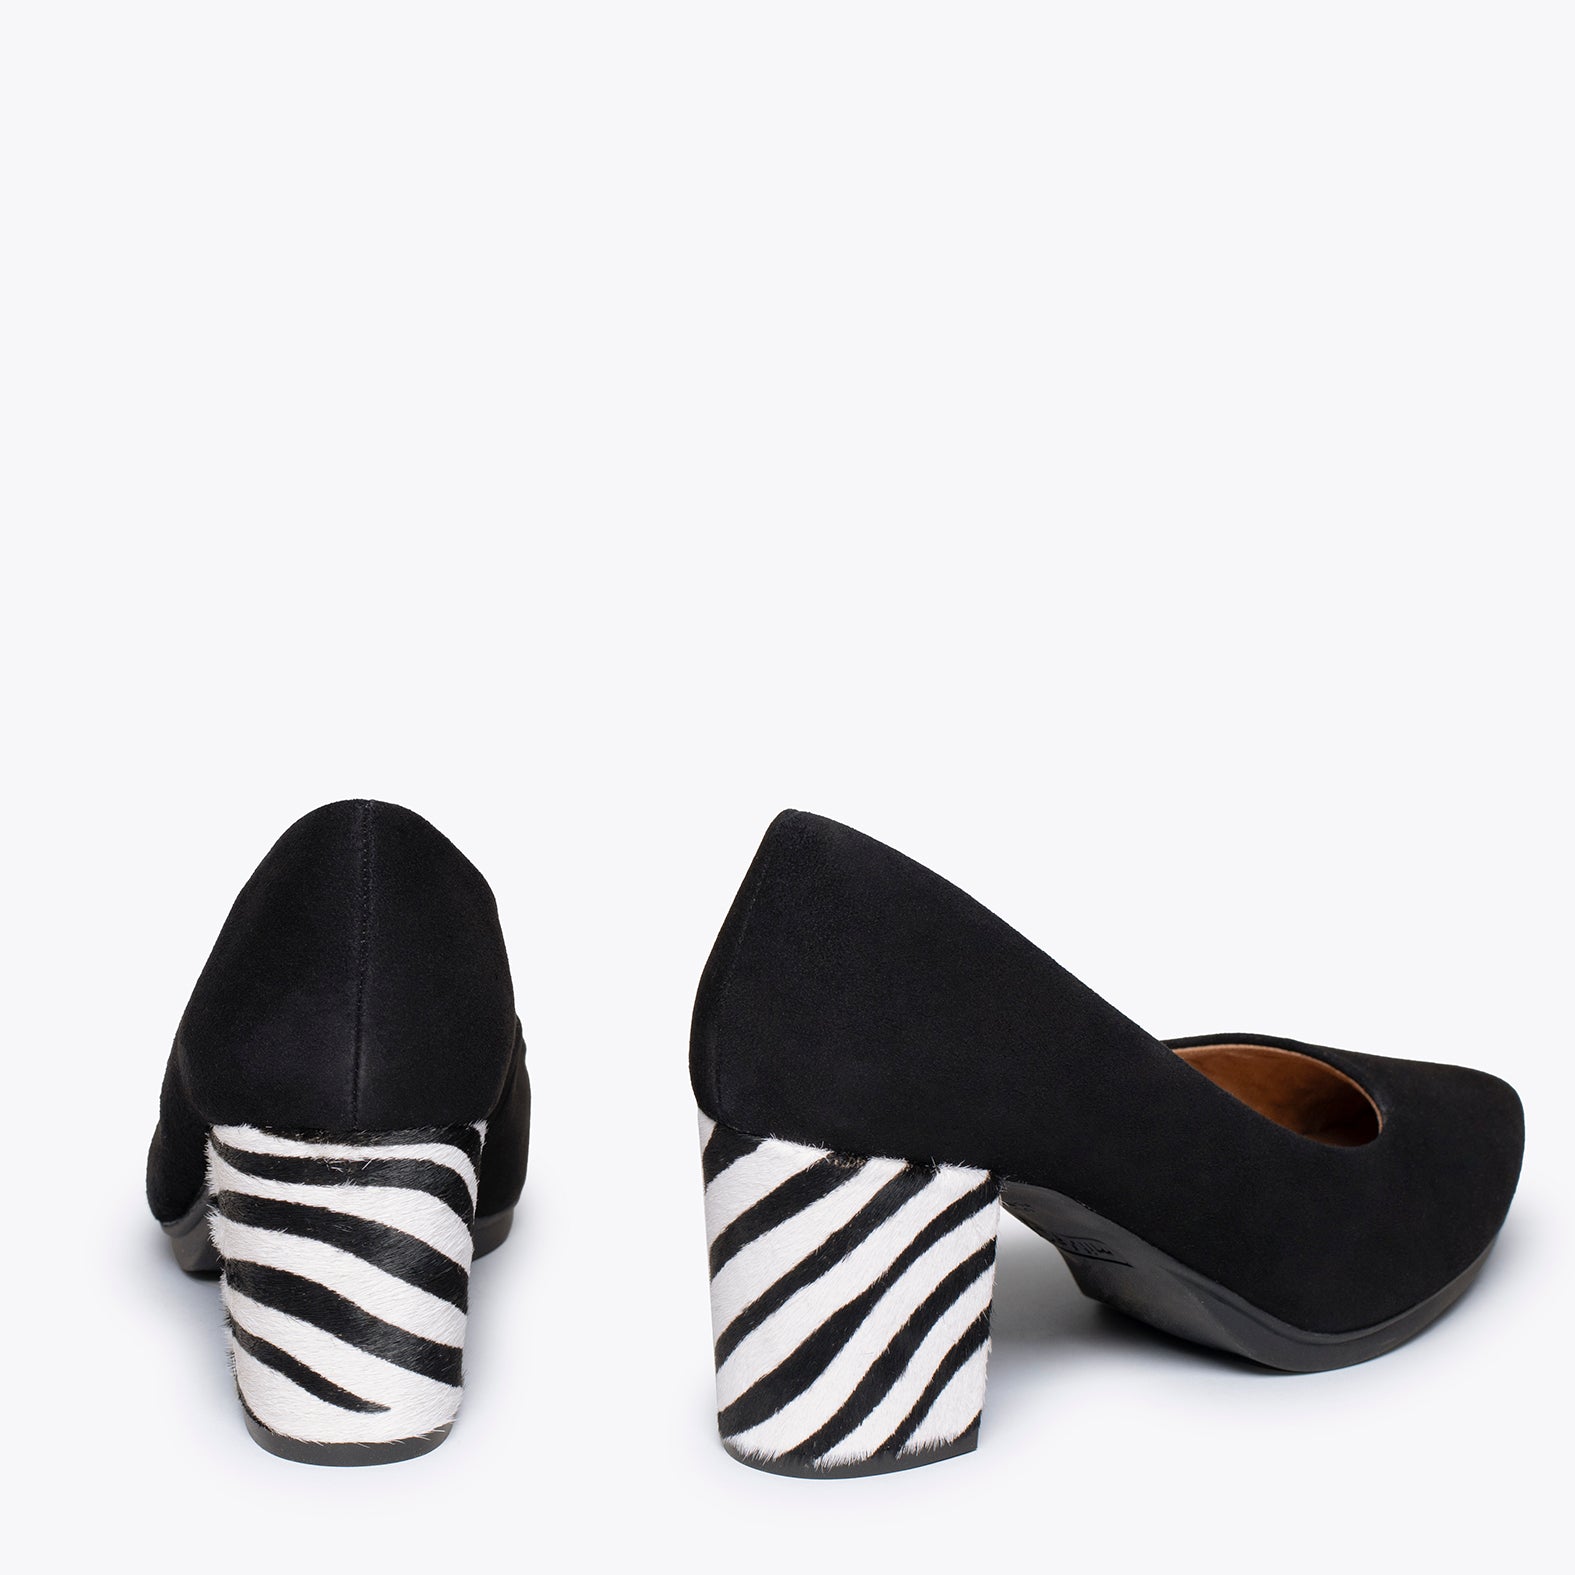 URBAN S WILD - Zapatos negros de tacón Animal Print CEBRA